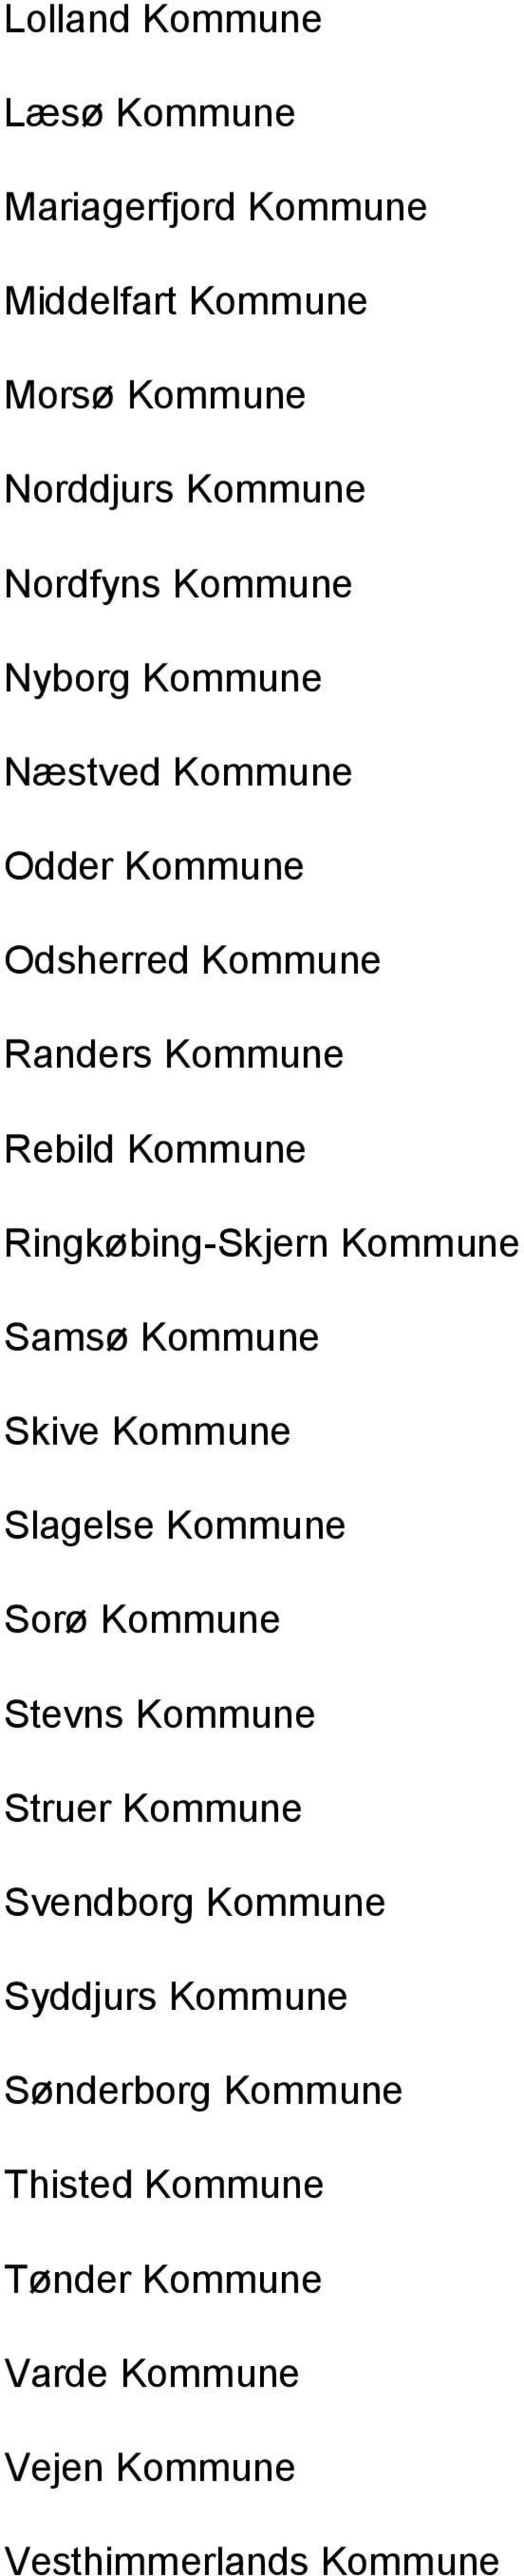 Ringkøbing-Skjern Kommune Samsø Kommune Skive Kommune Slagelse Kommune Sorø Kommune Stevns Kommune Struer Kommune